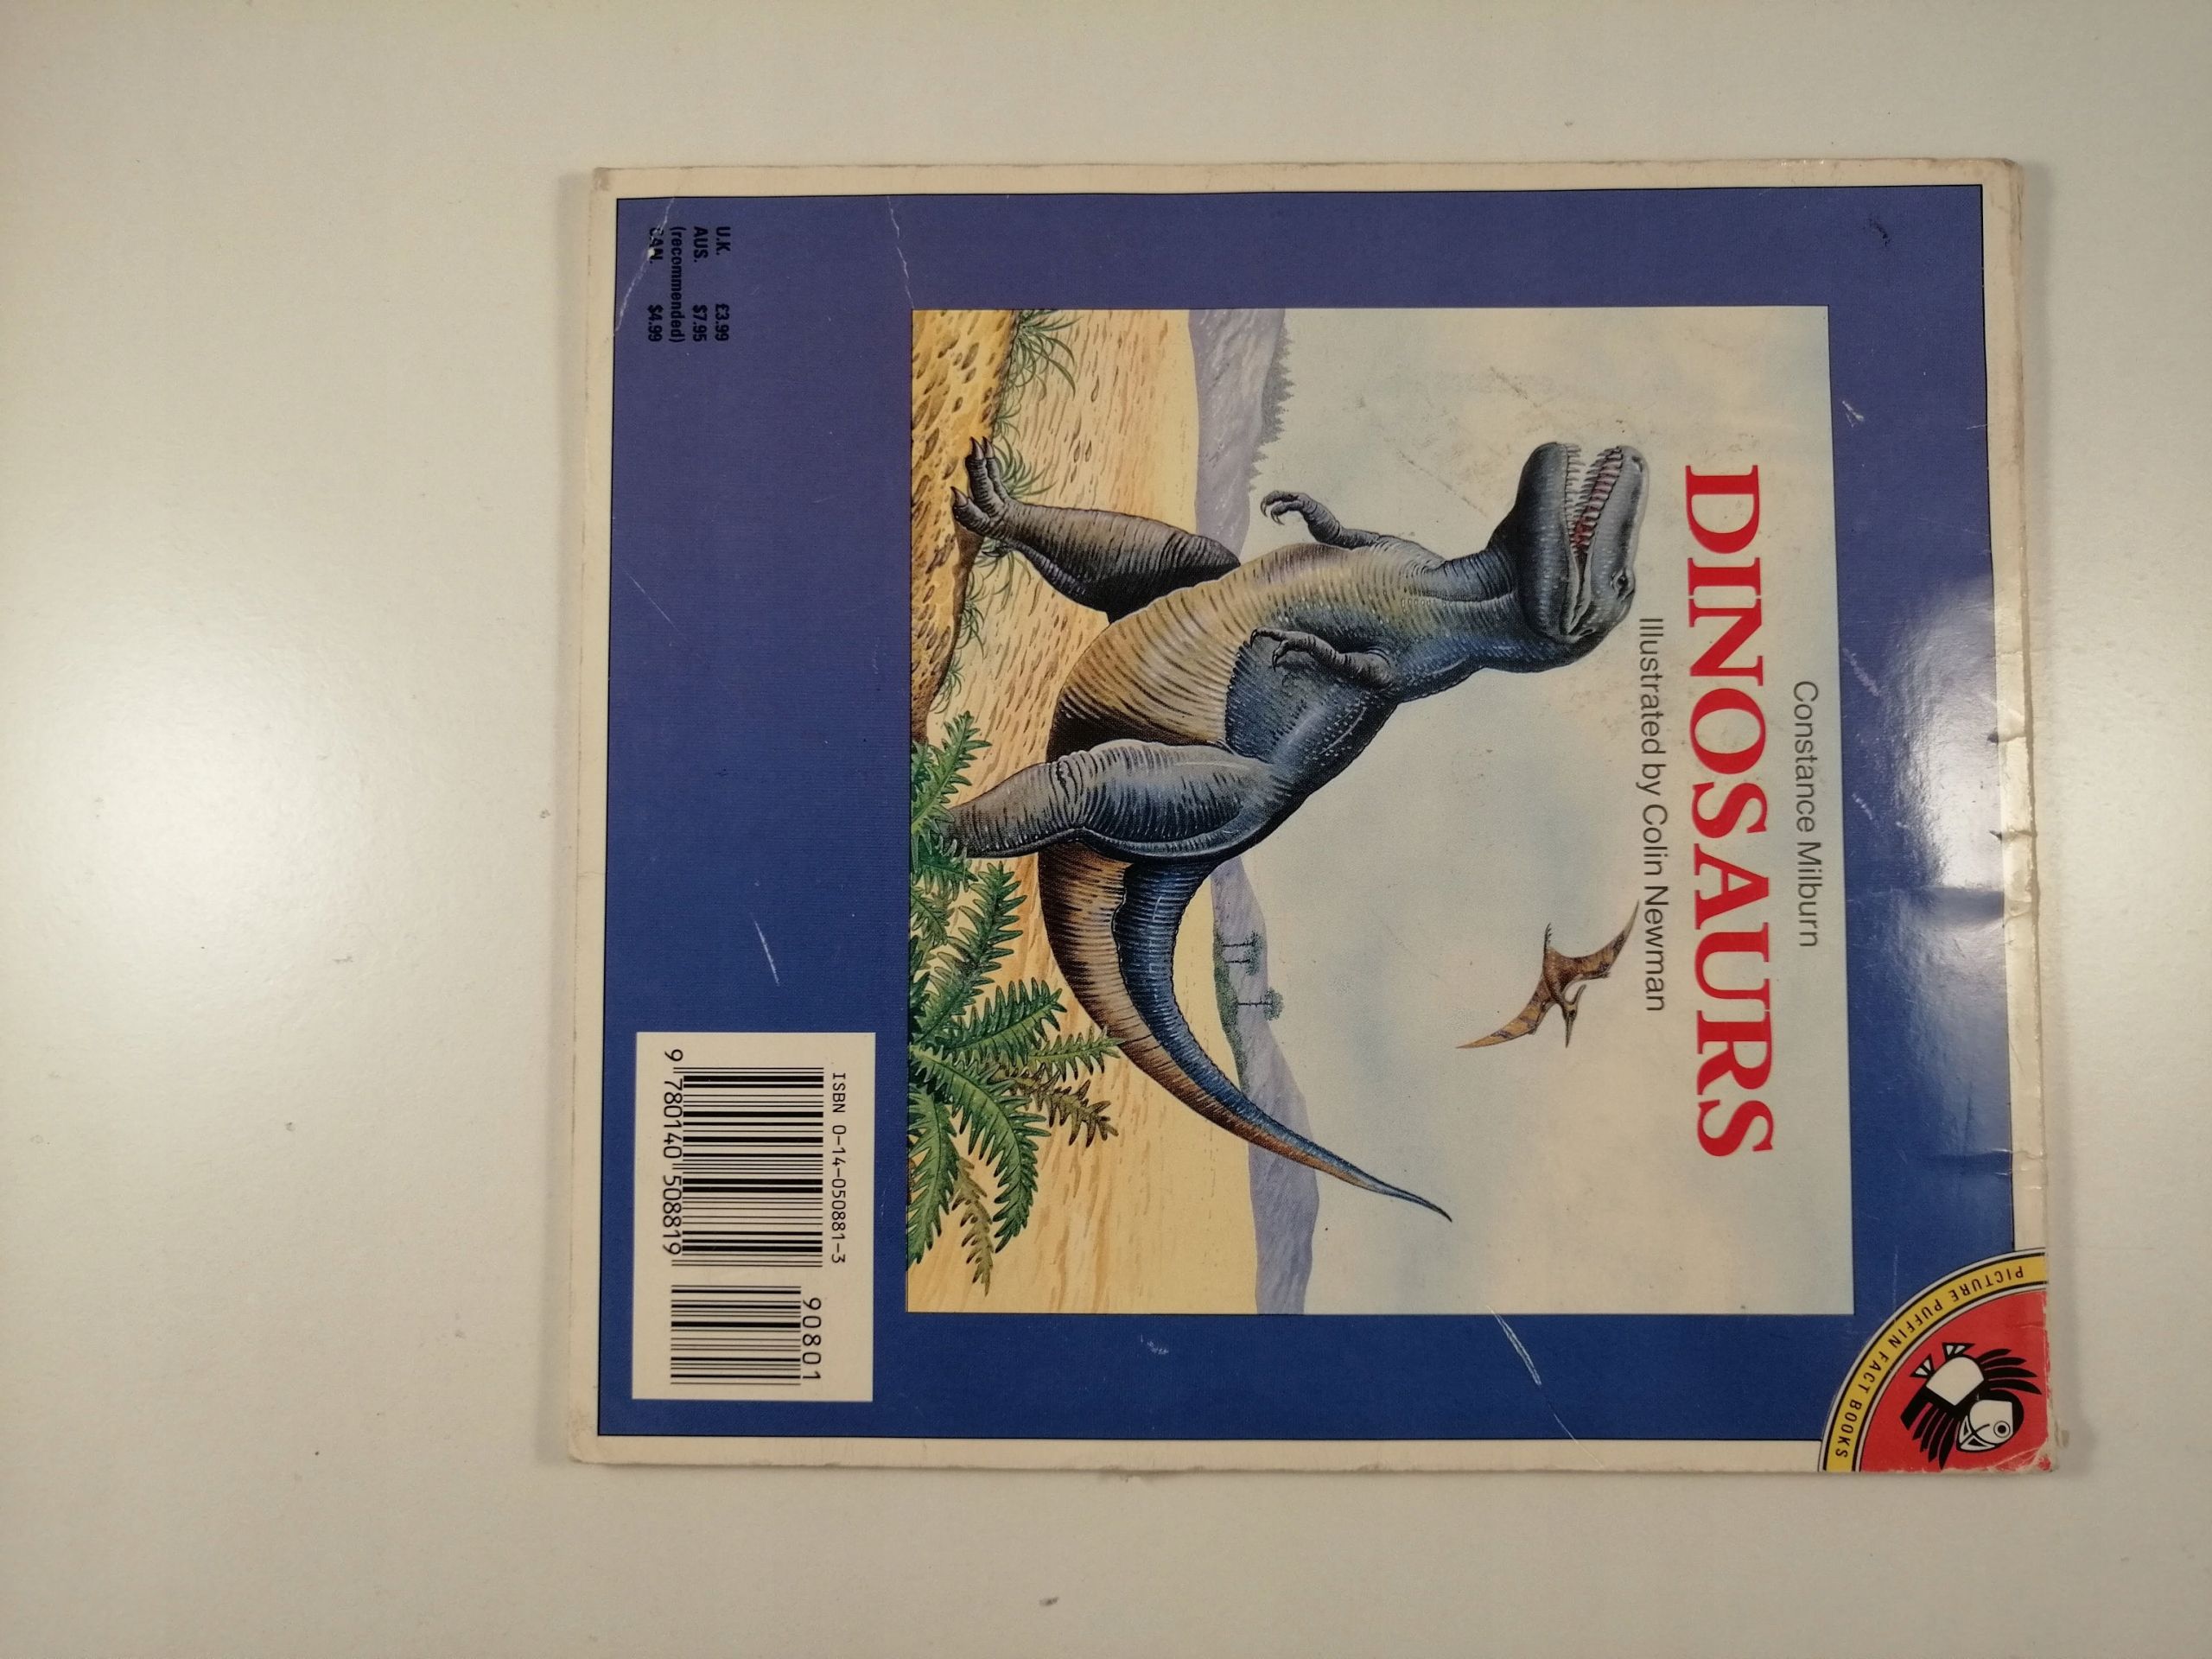 Dinosaurs - Constance Milburn